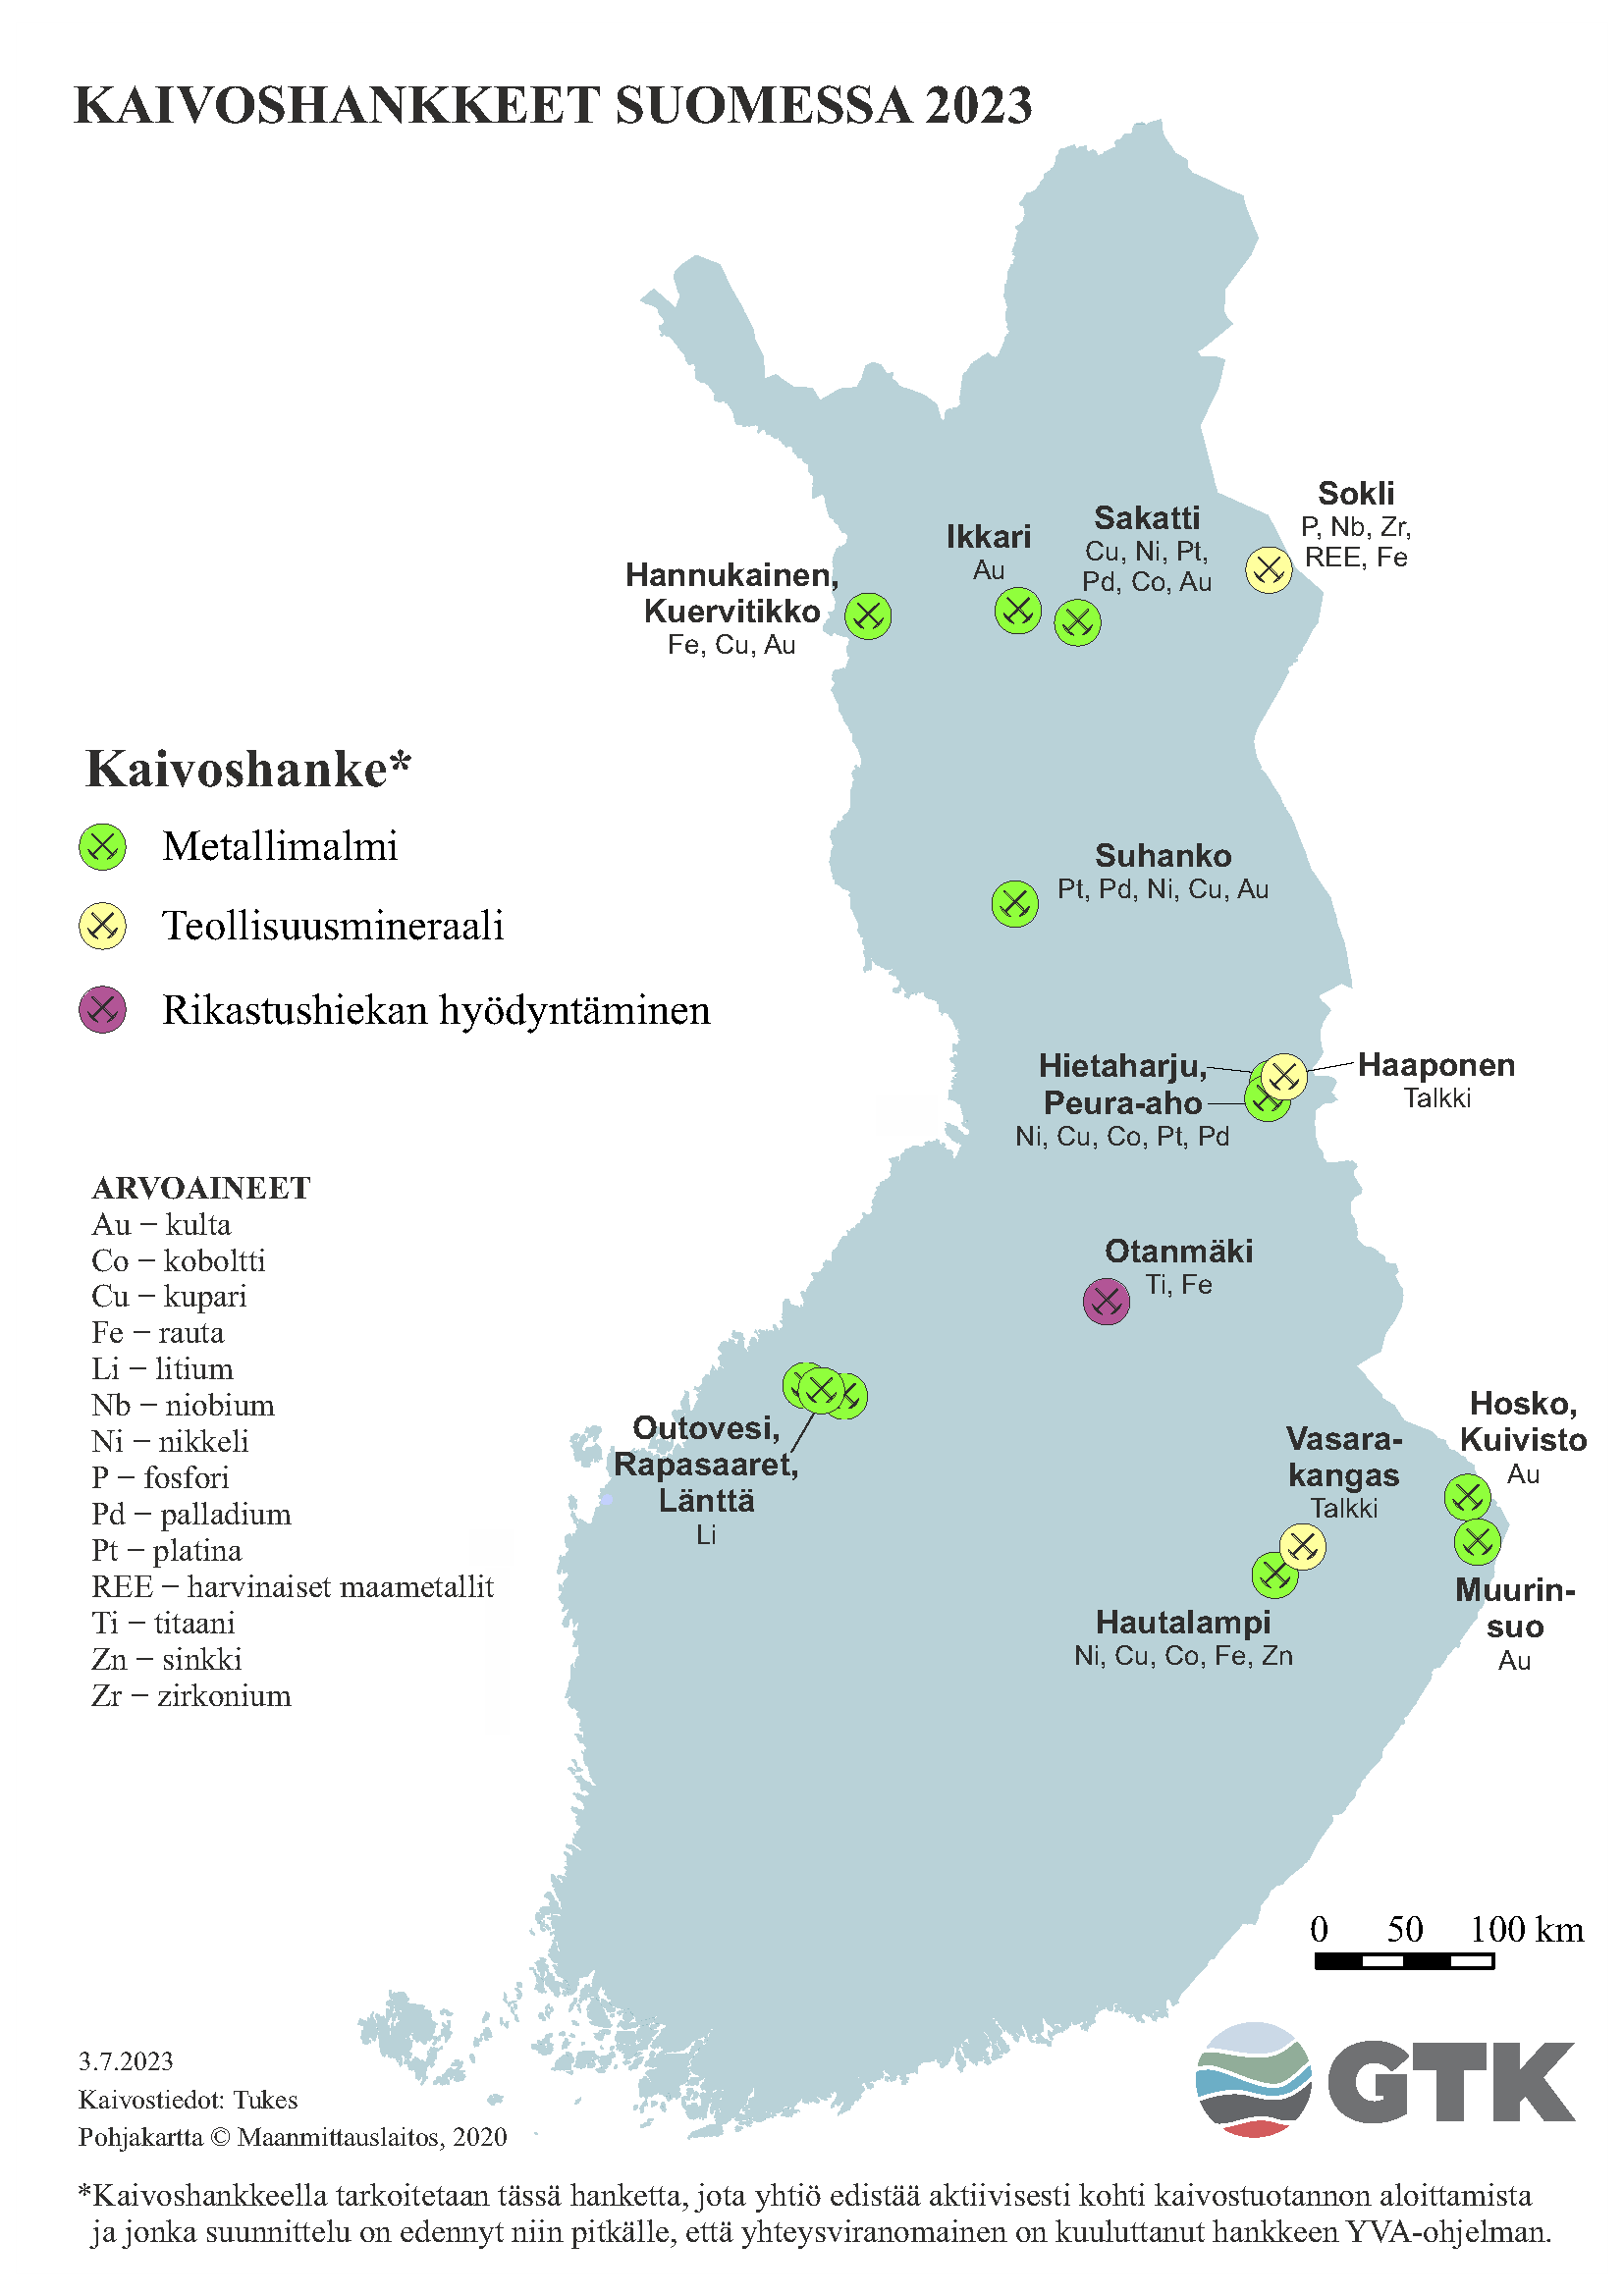 Suomen kartta, johon on merkattu kaivoshankkeet Suomessa vuonna 2023